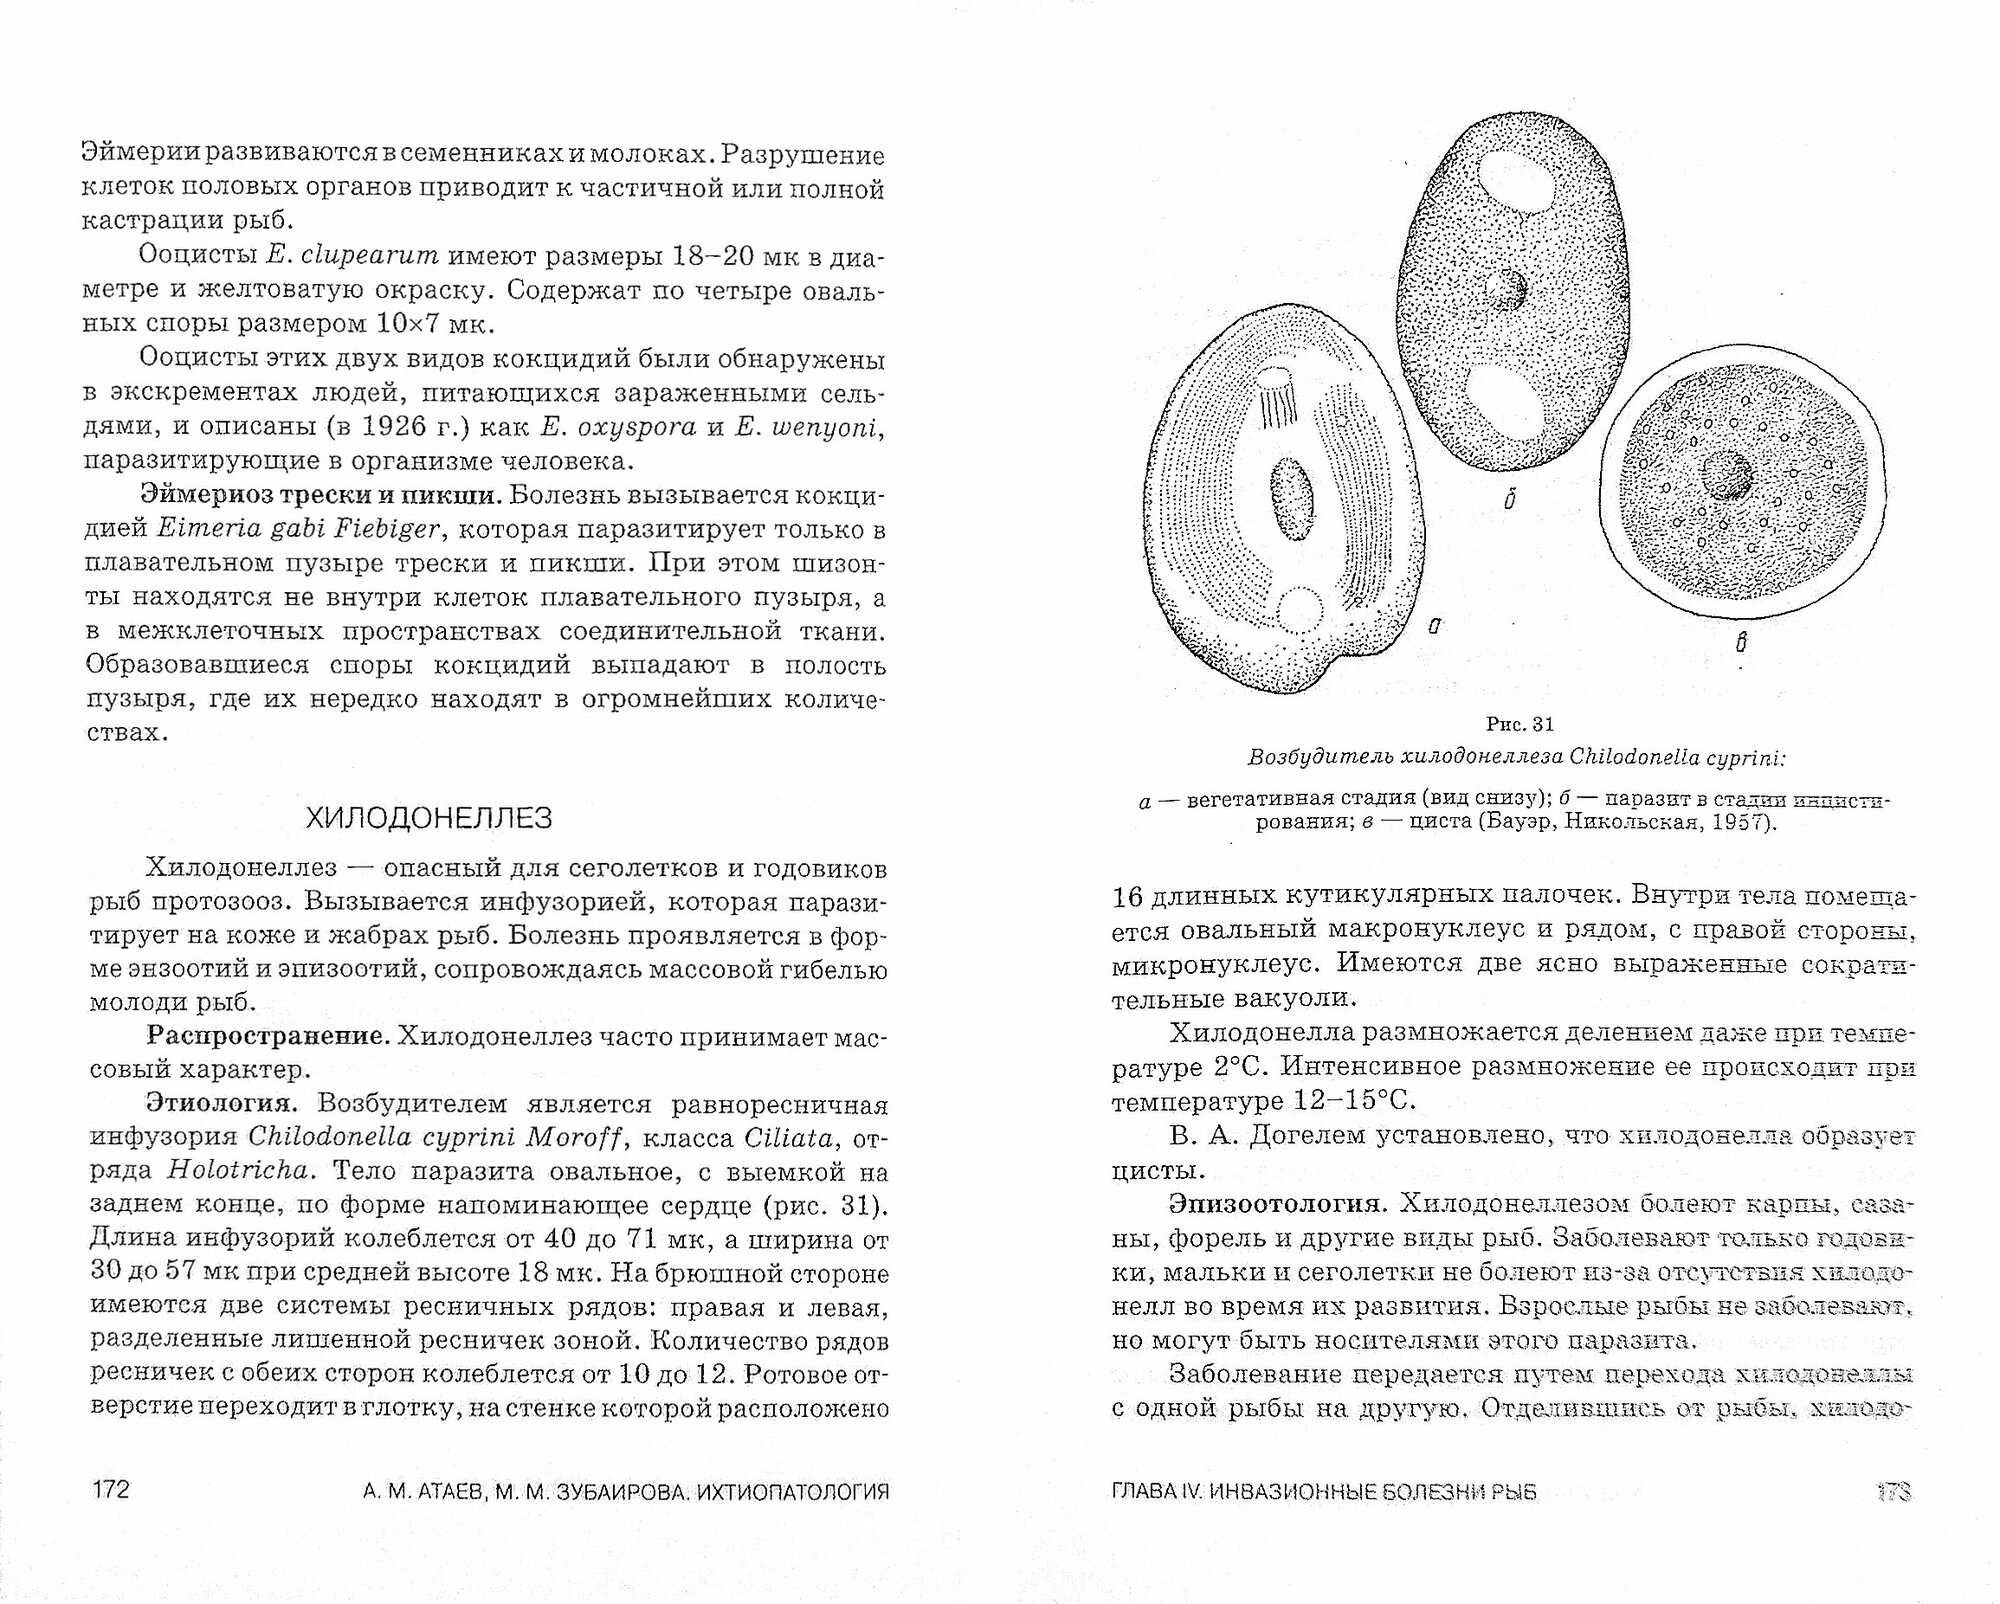 Ихтиопатология. Учебное пособие - фото №2